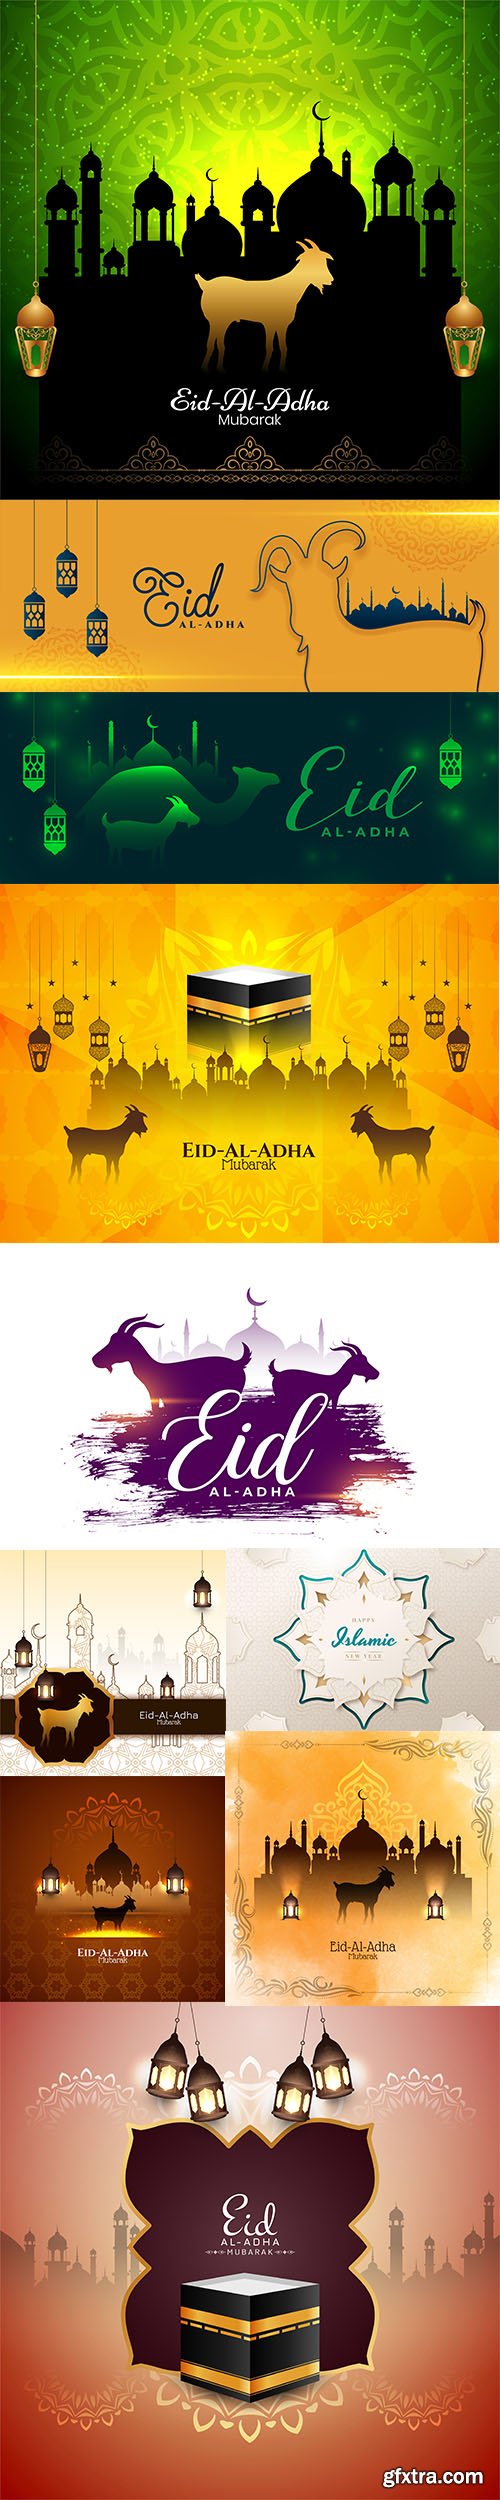 Eid al adha islamic festival banner design vol 2